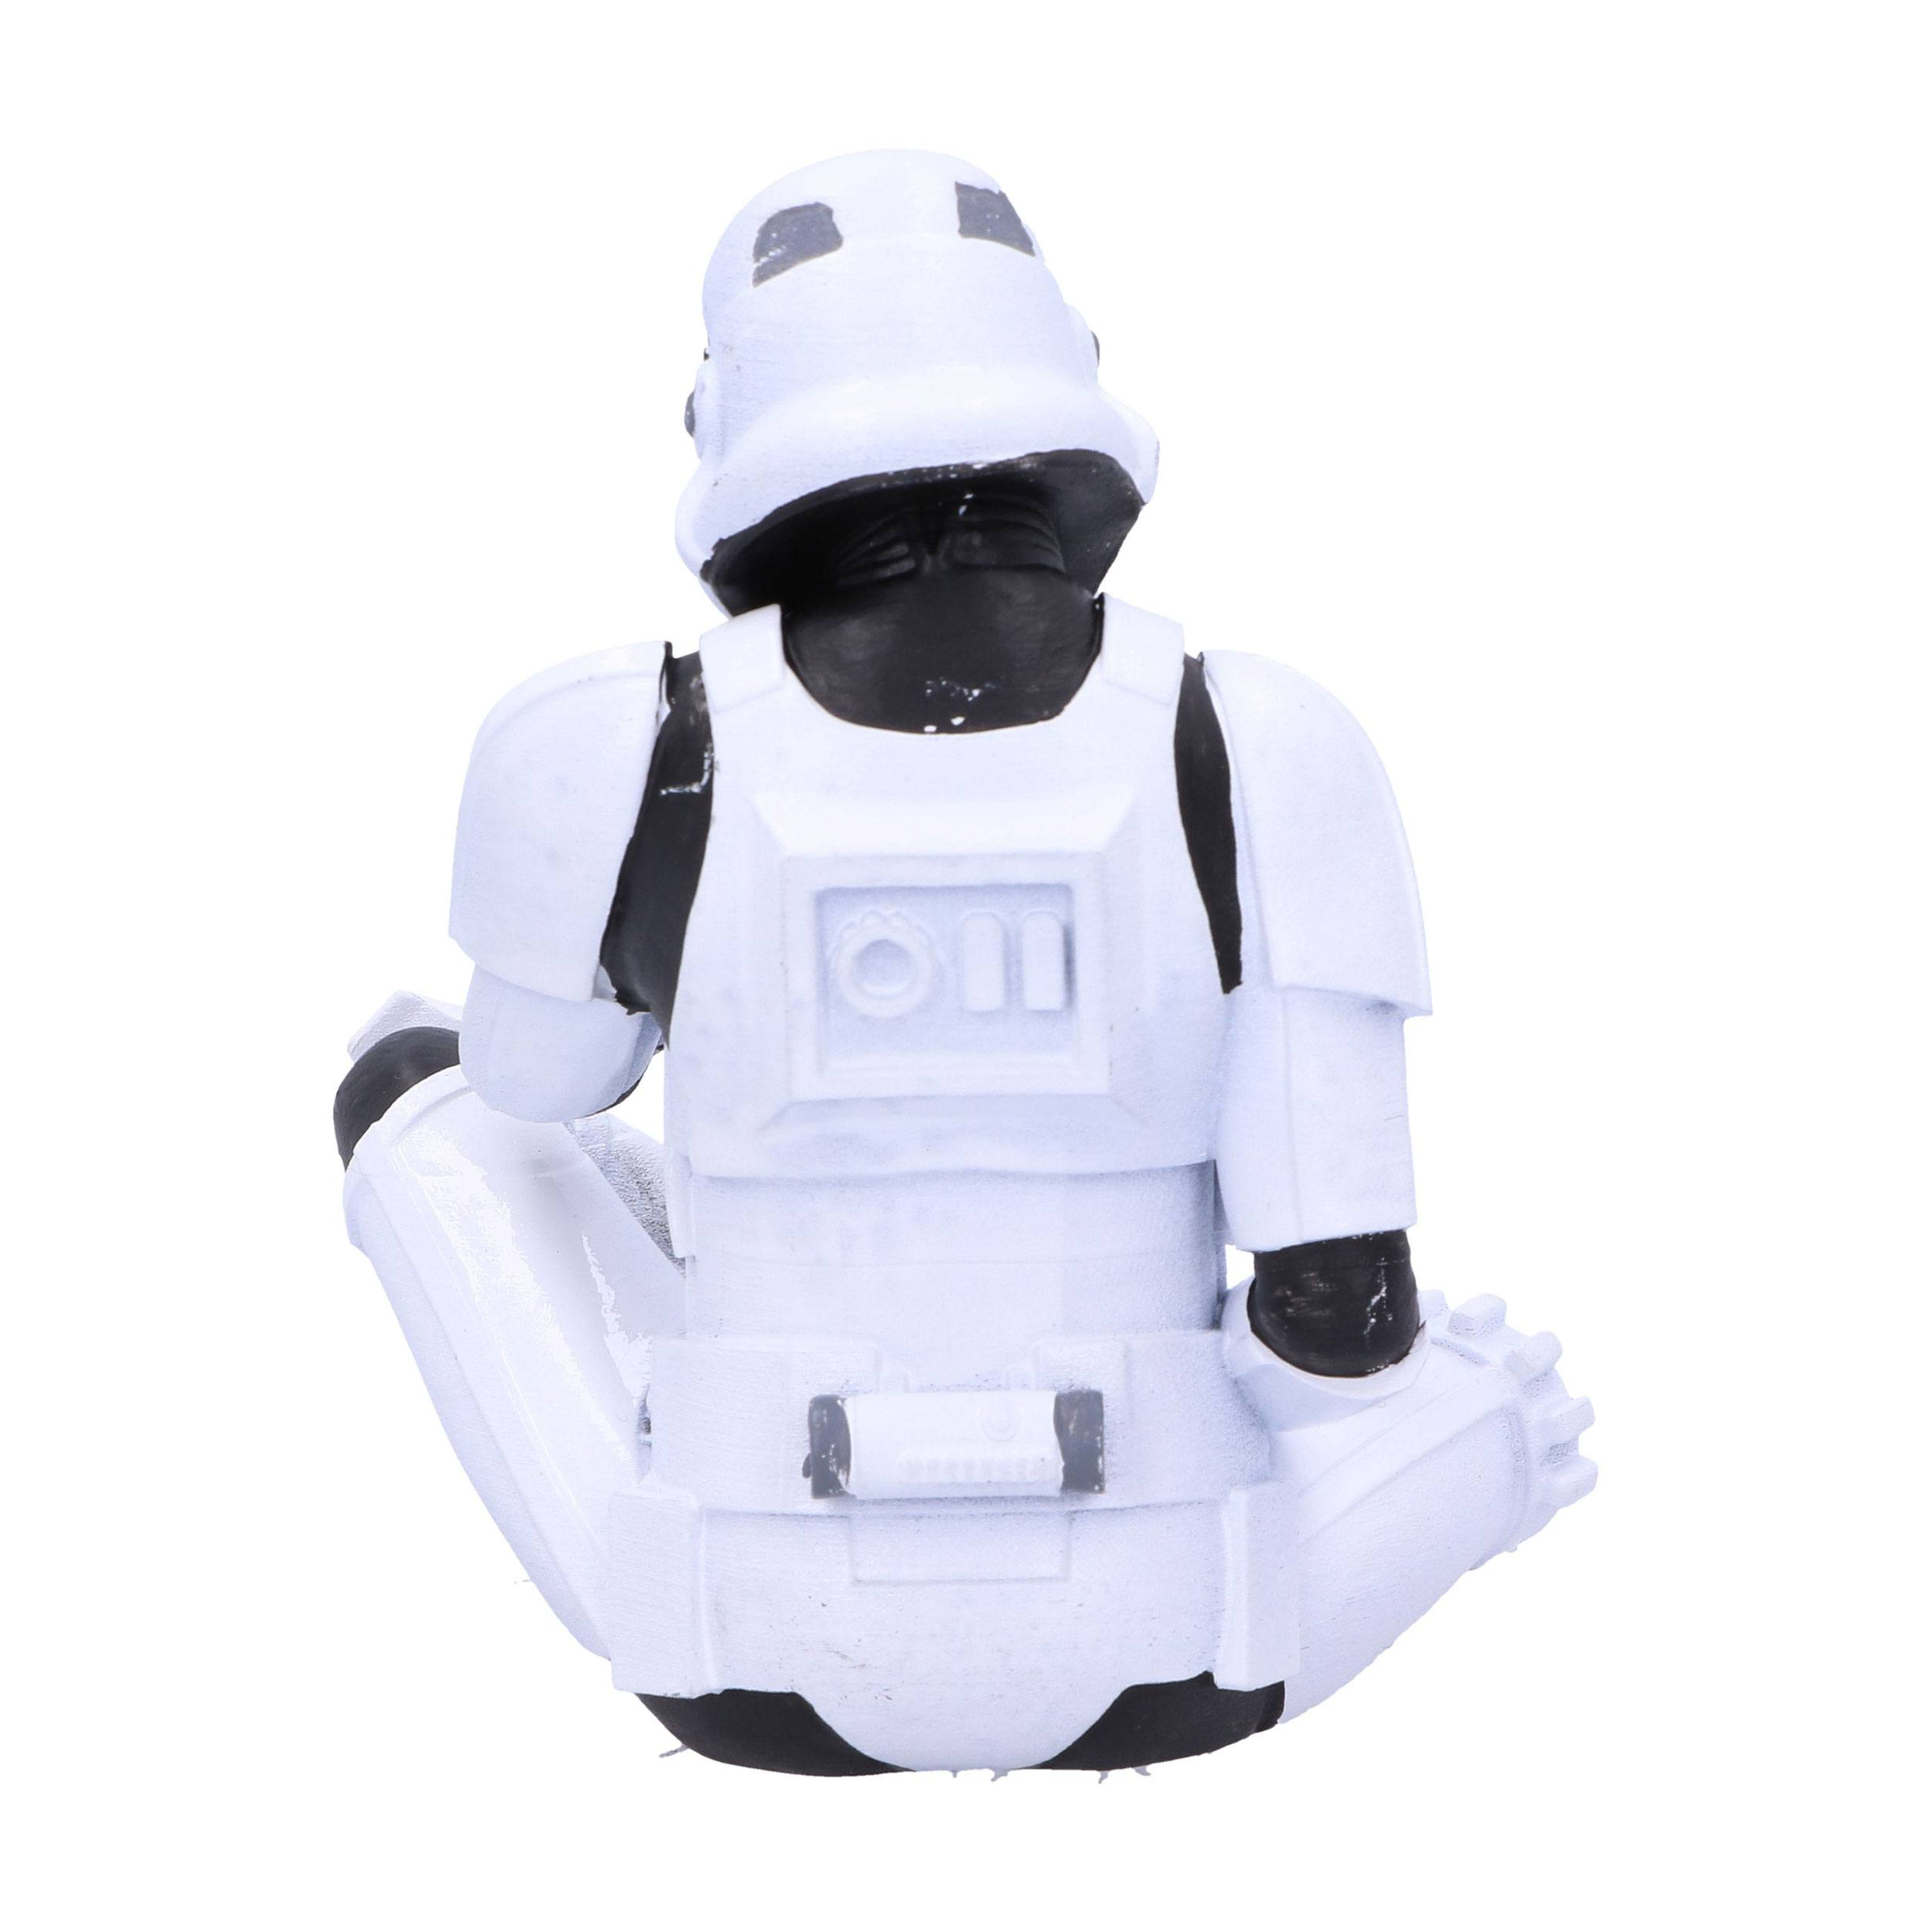 NEMESIS Actionfigur See Stormtrooper Figur: 10cm NOW Evil No Original